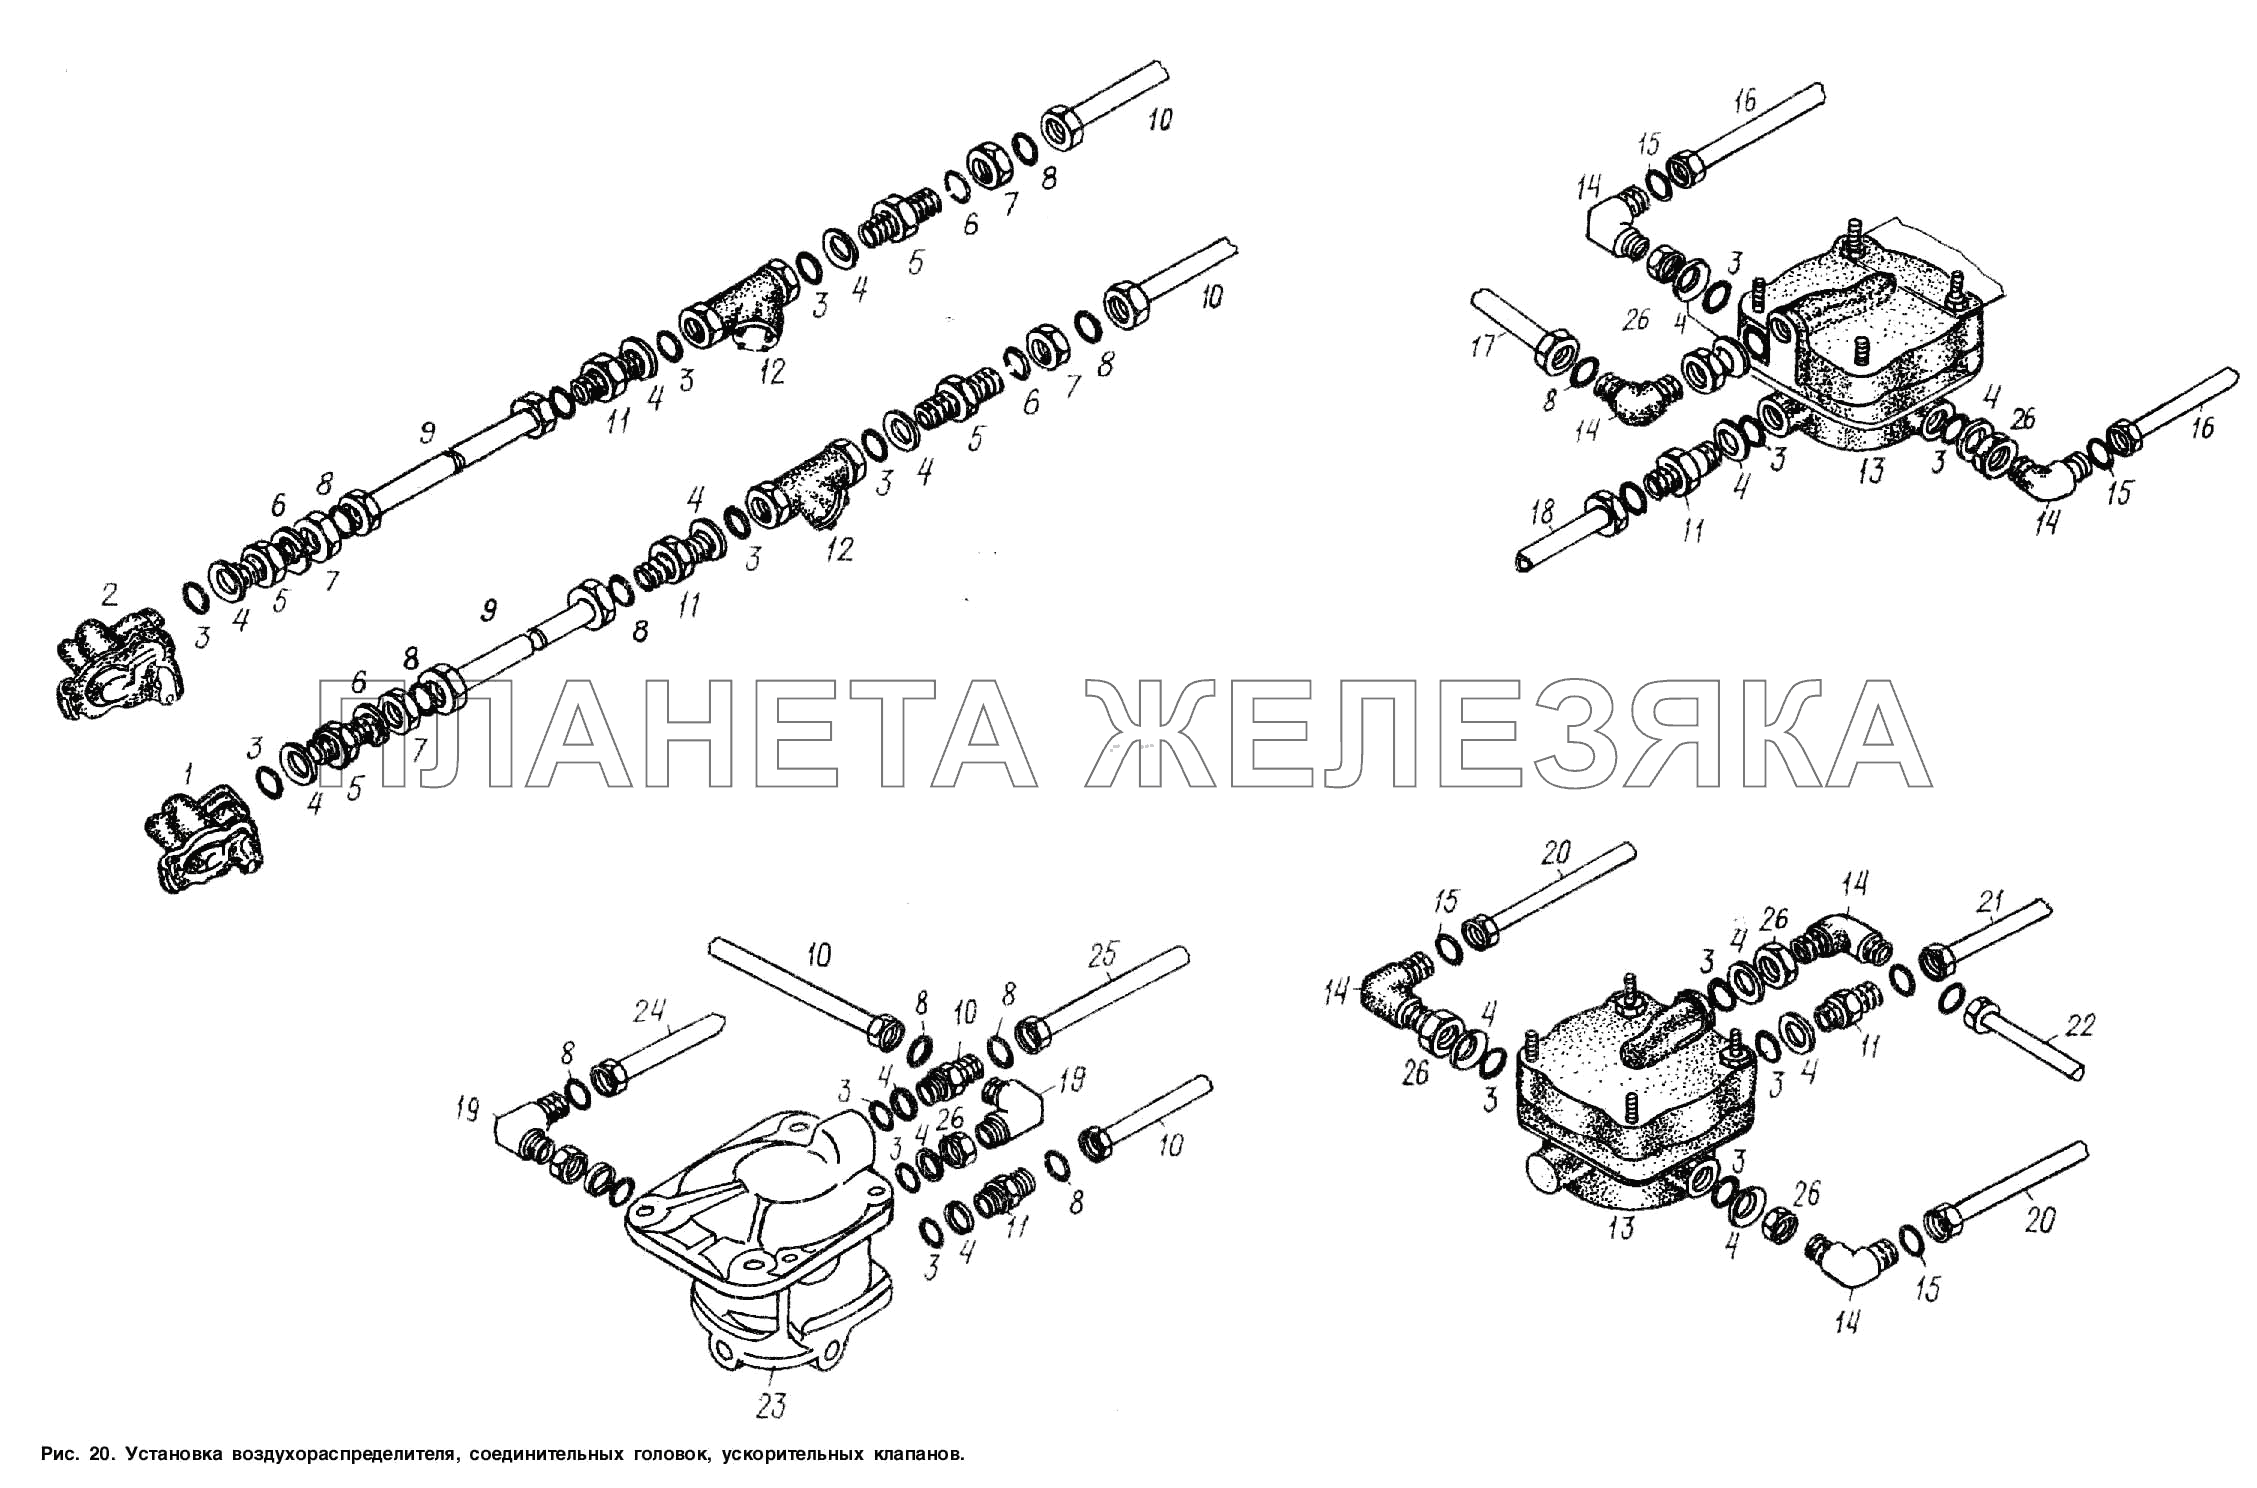 Установка воздухораспределителя, соединительных головок, ускорительных клапанов МАЗ-93866